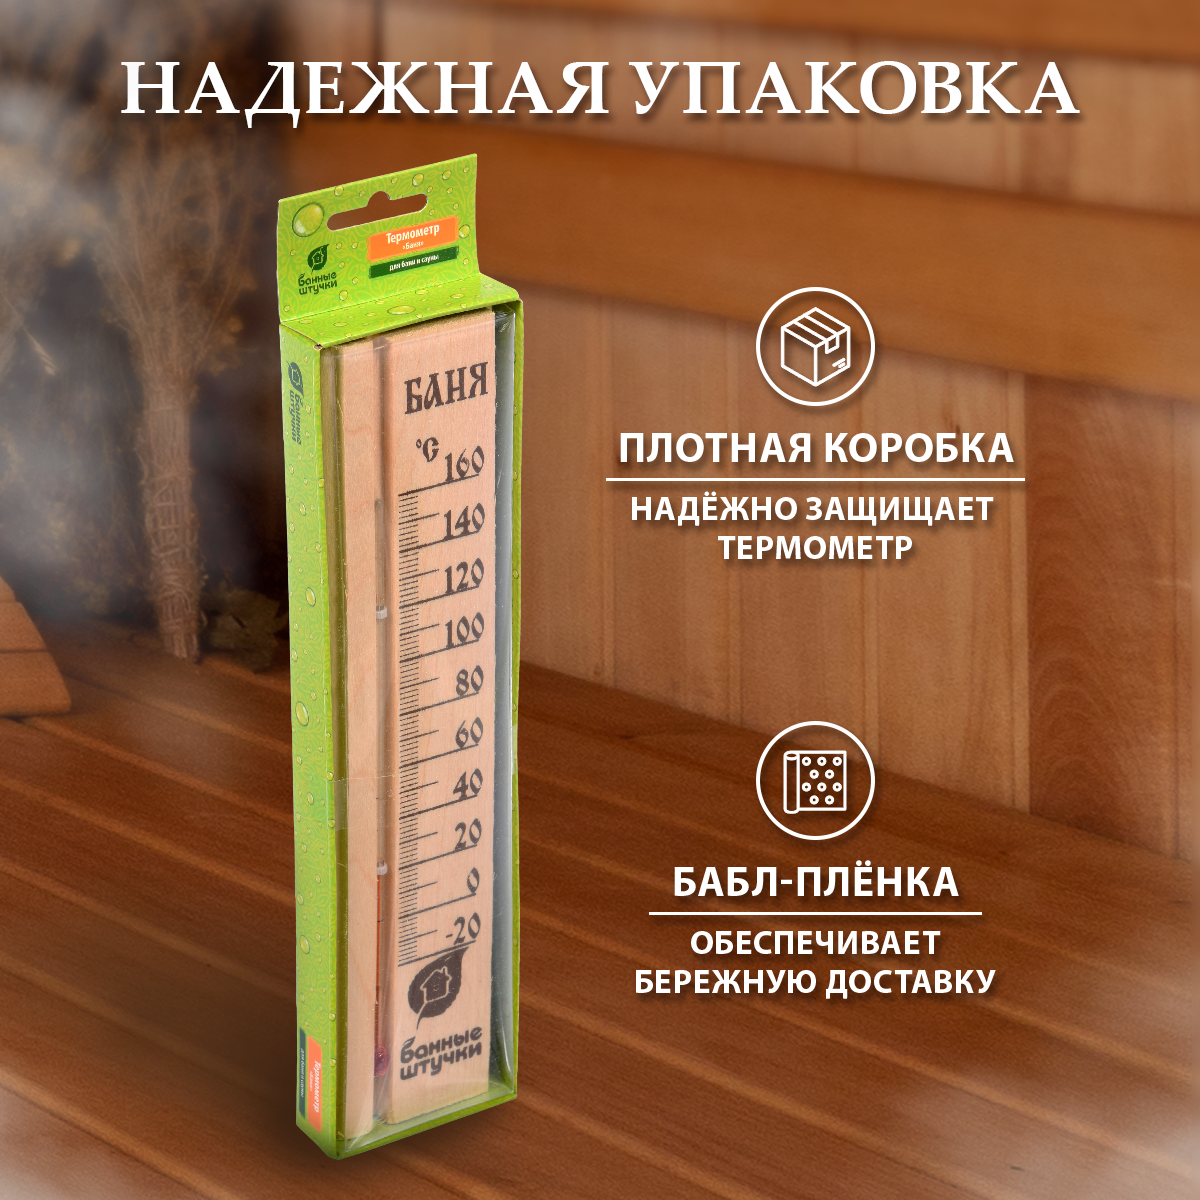 Термометр "Баня" /дерево/комнатный/настенный 27х6,5х1,5 см для бани и сауны